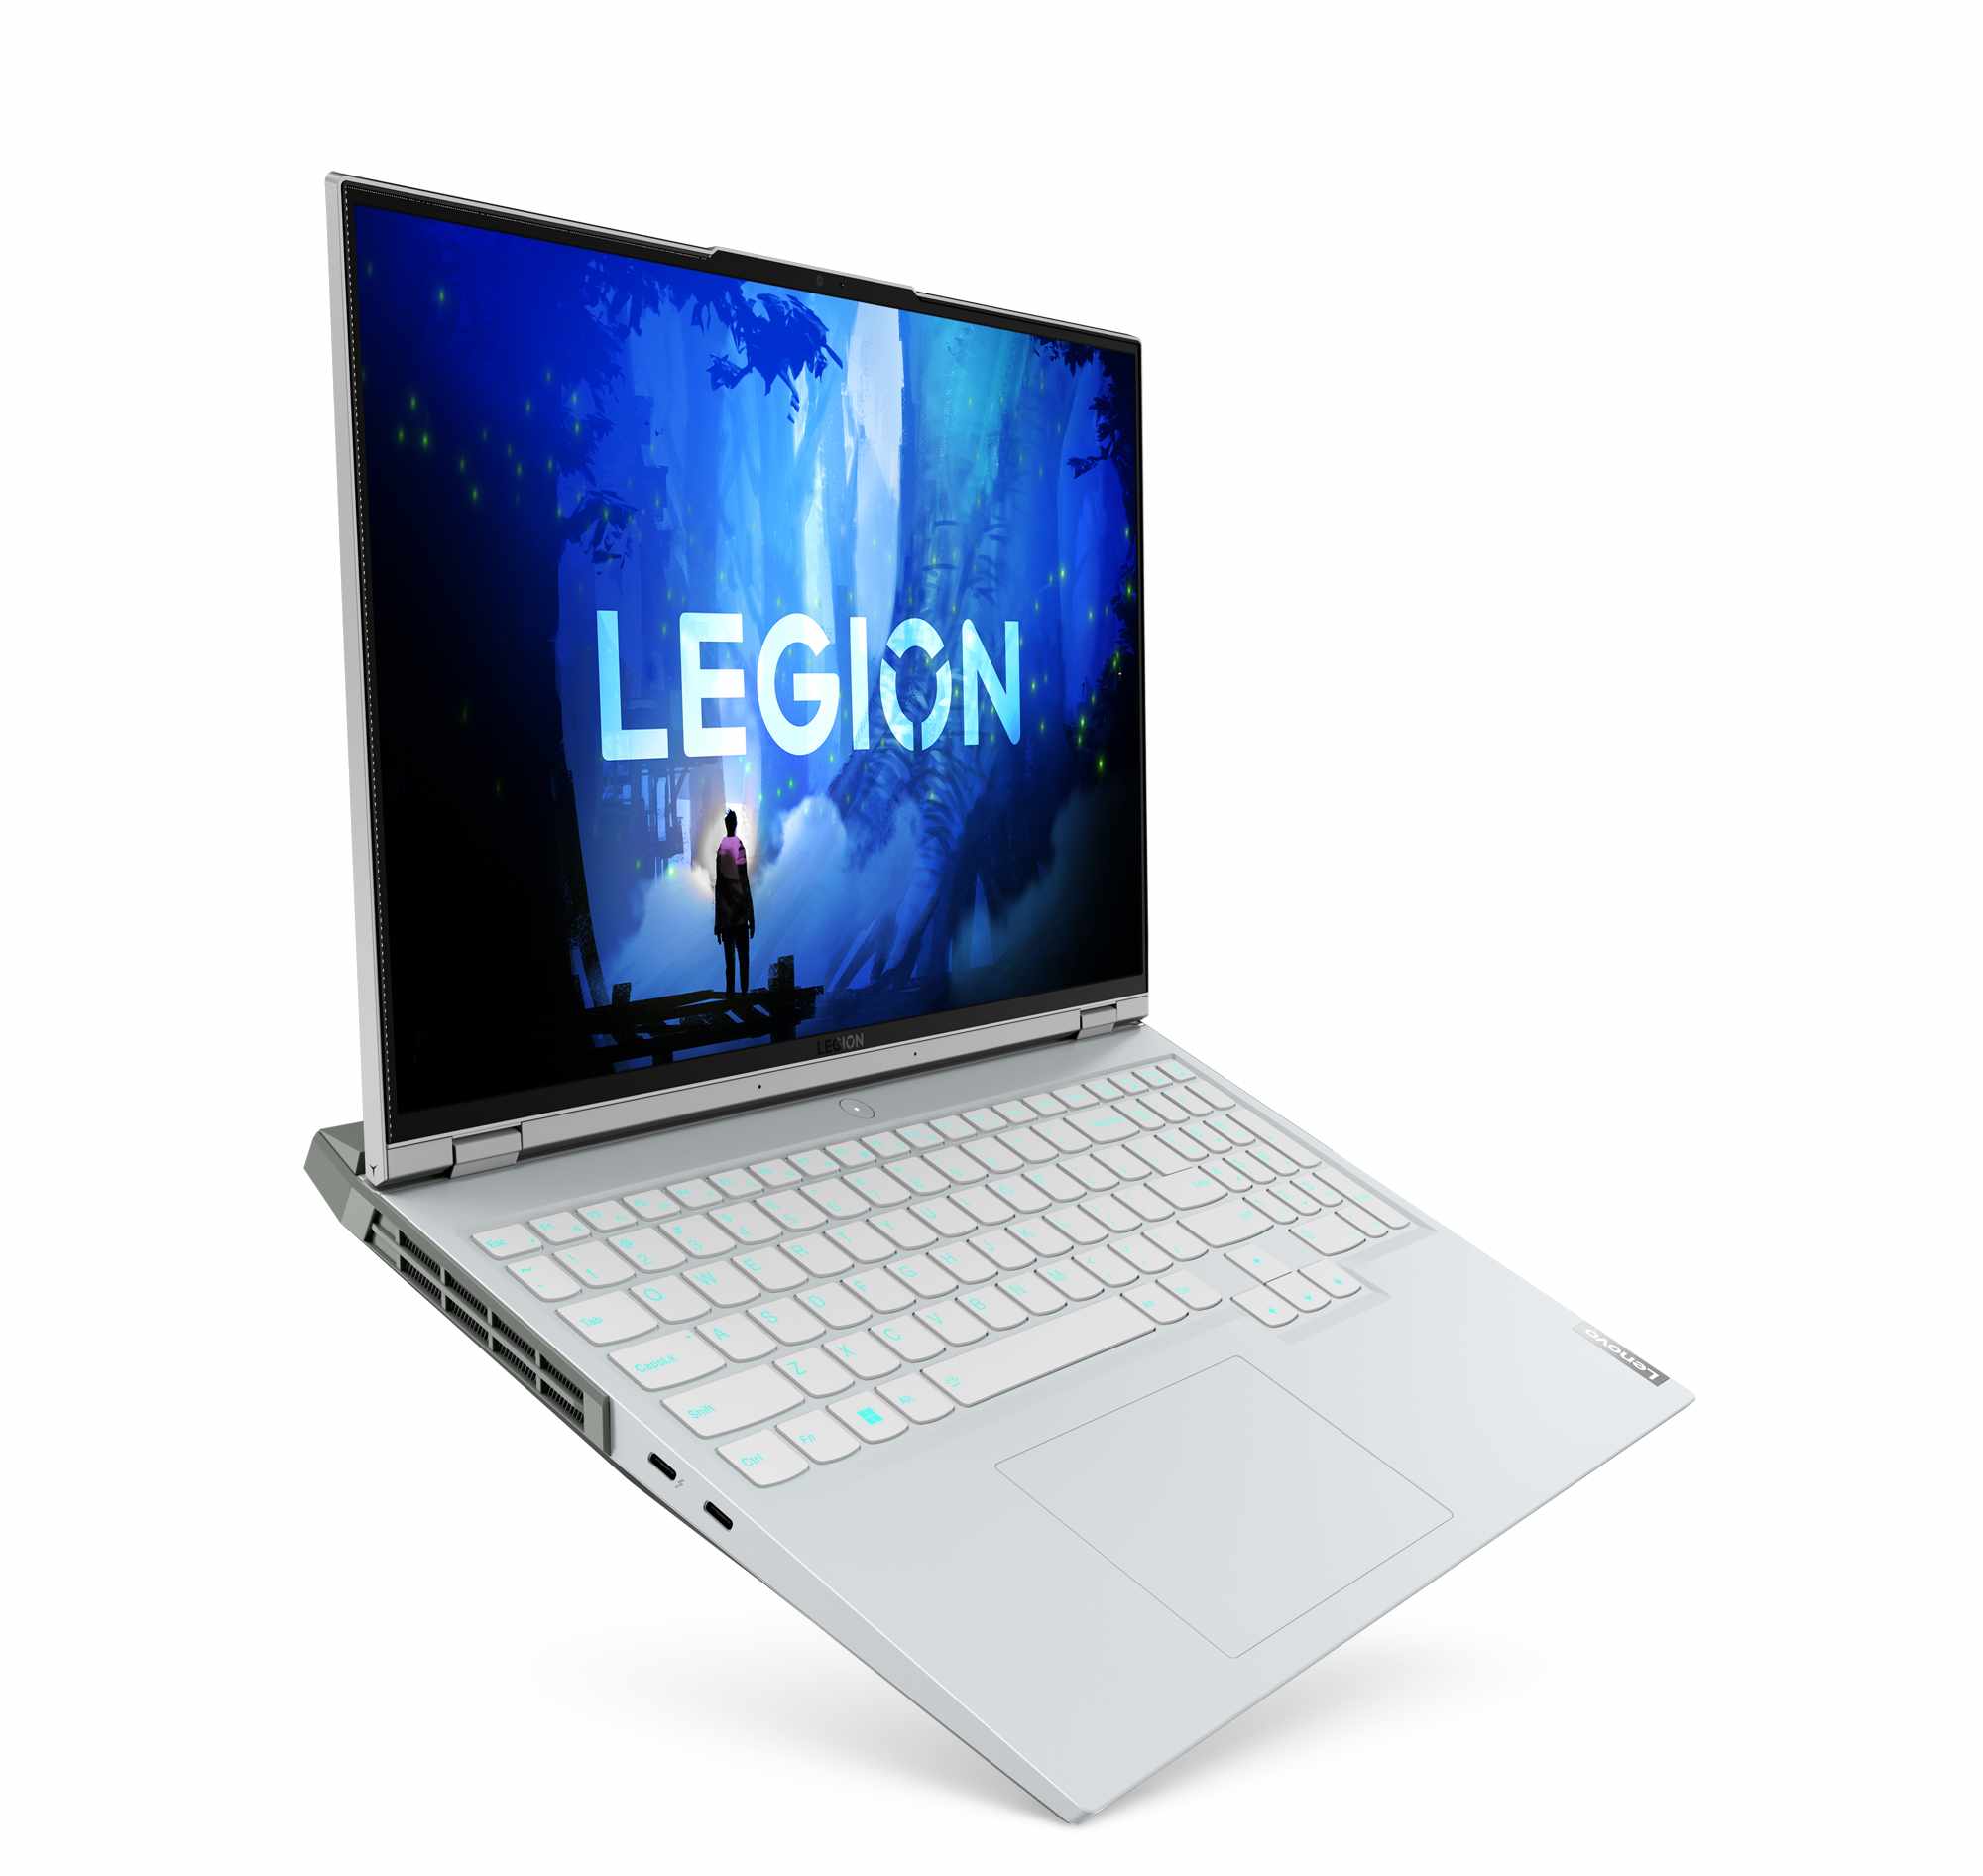 خرید لپ تاپ Lenovo Legion 5 Pro